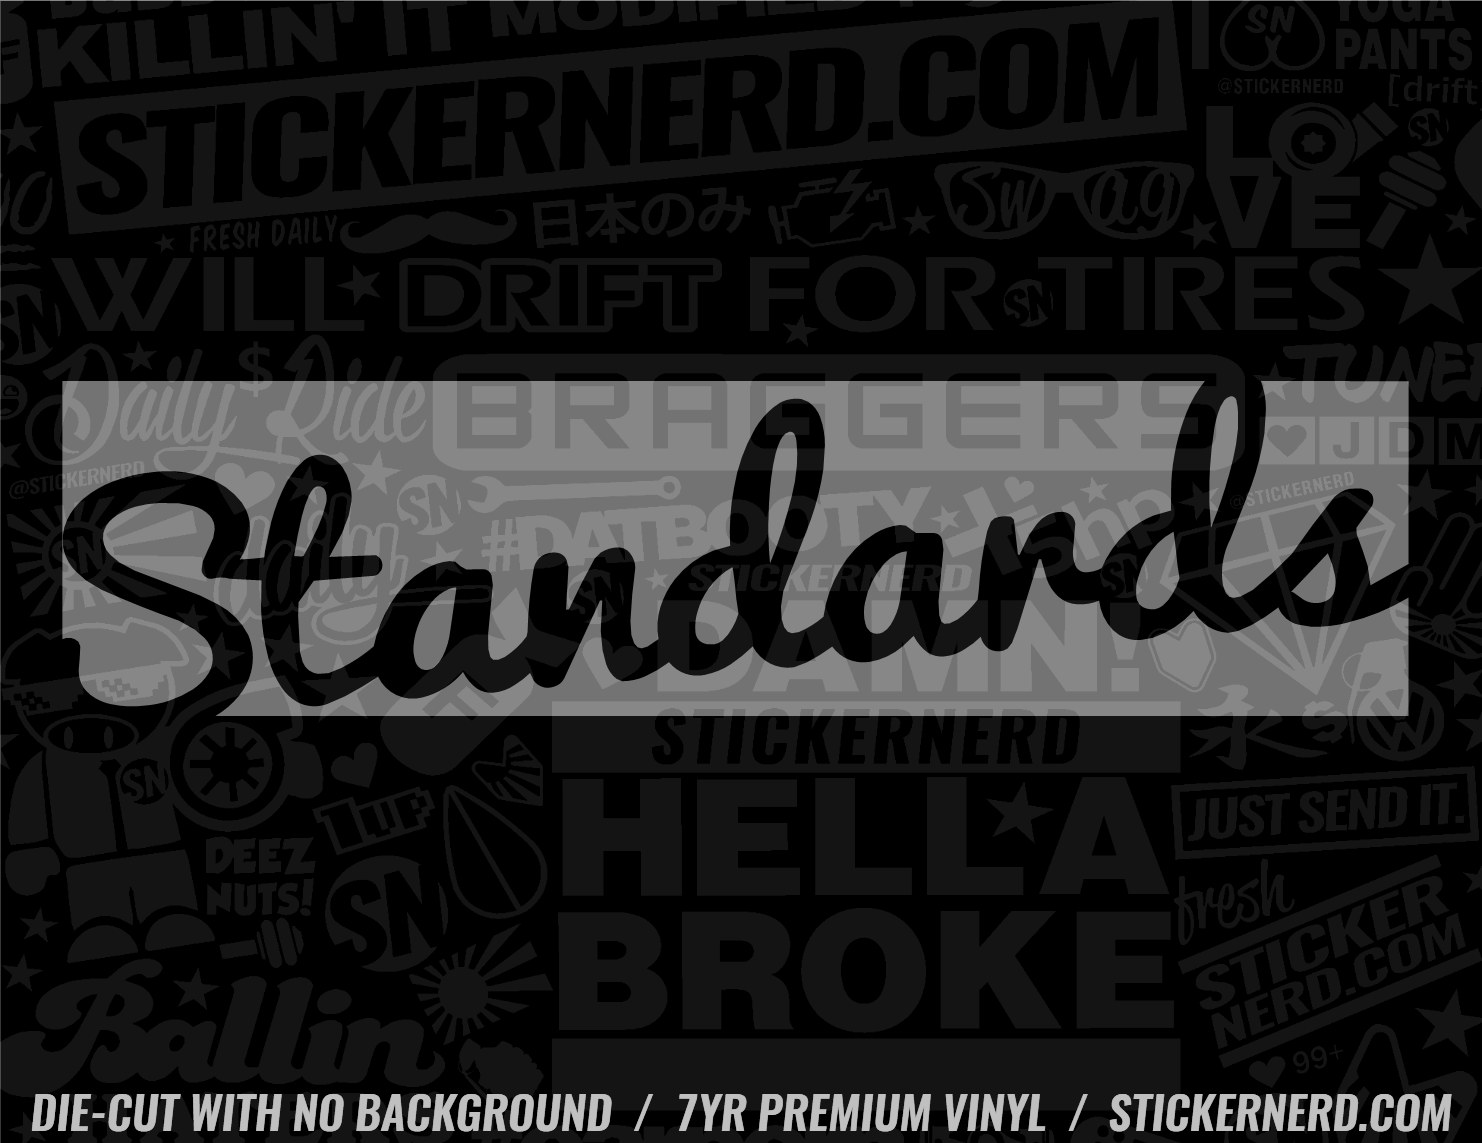 Standards Sticker - Decal - STICKERNERD.COM